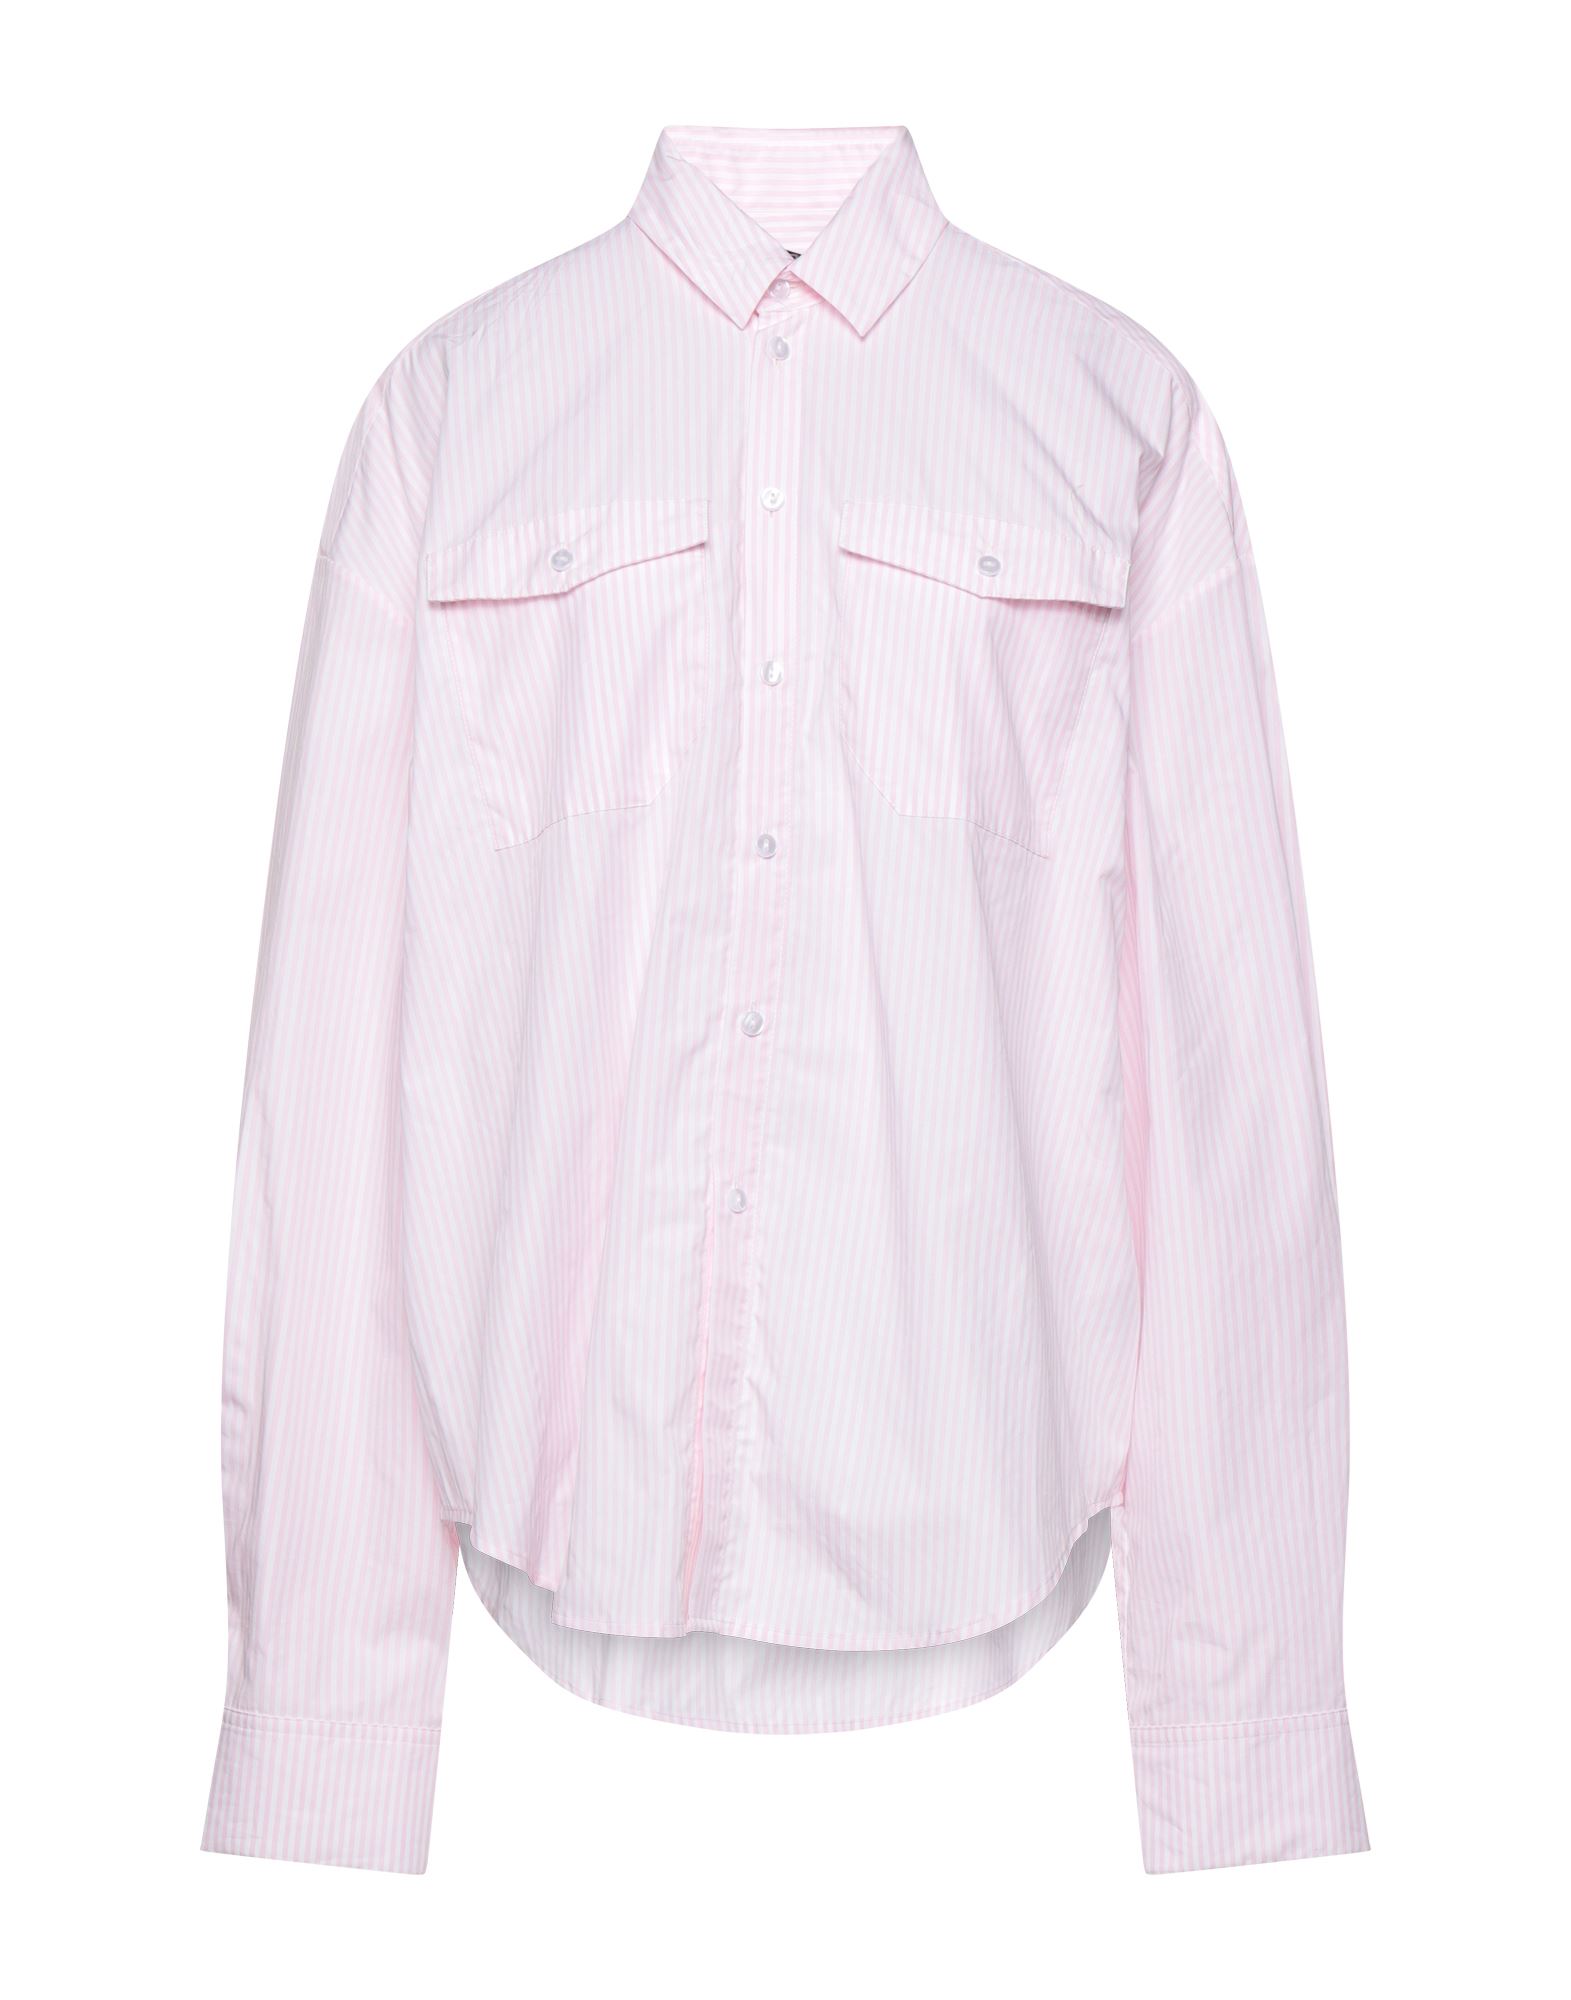 Antidote Shirts In Pink